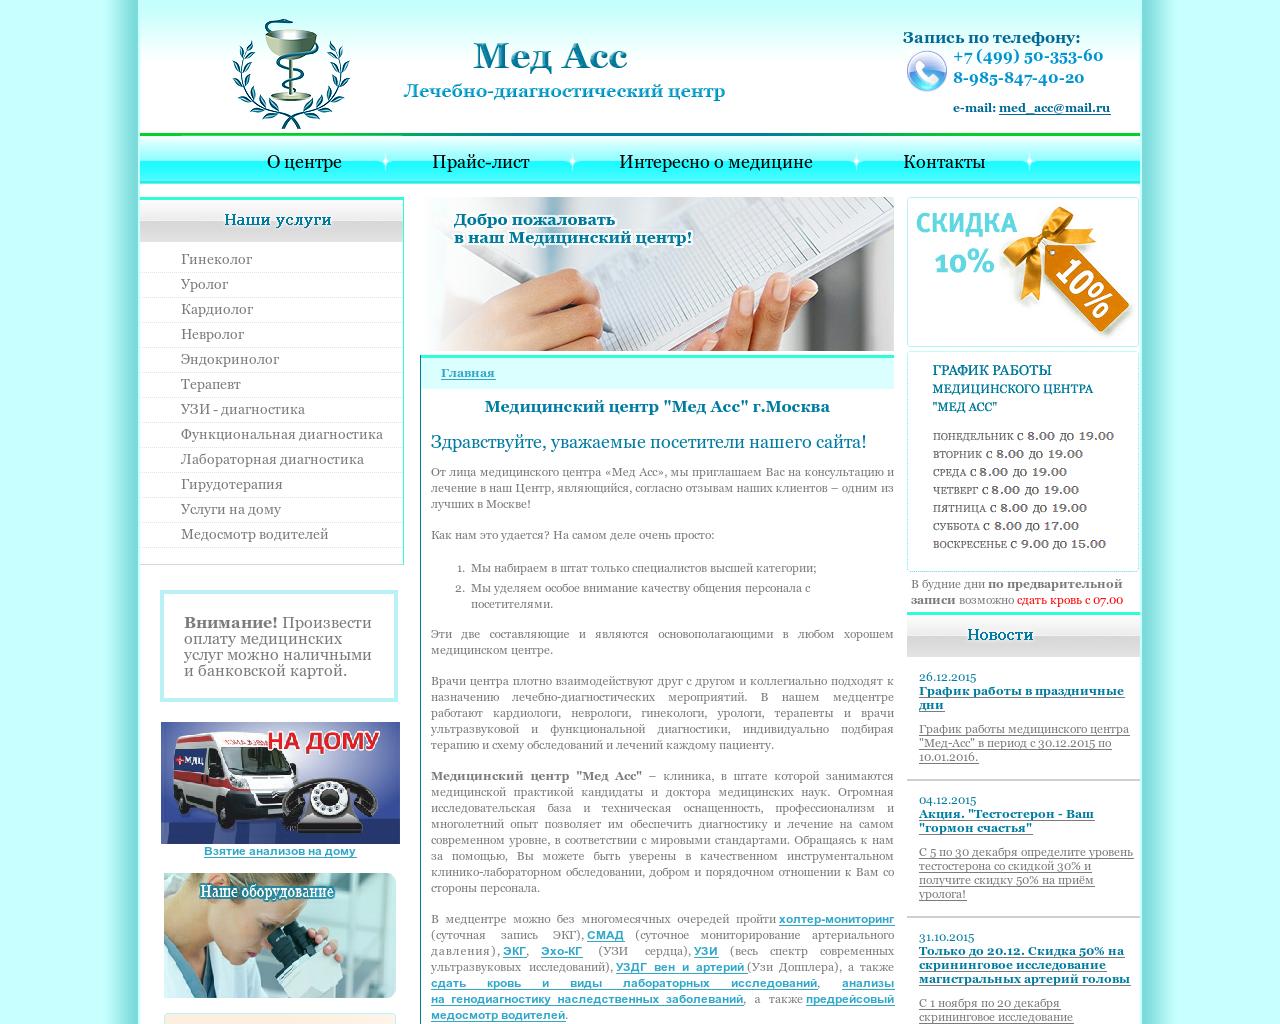 Изображение сайта med-acc.ru в разрешении 1280x1024